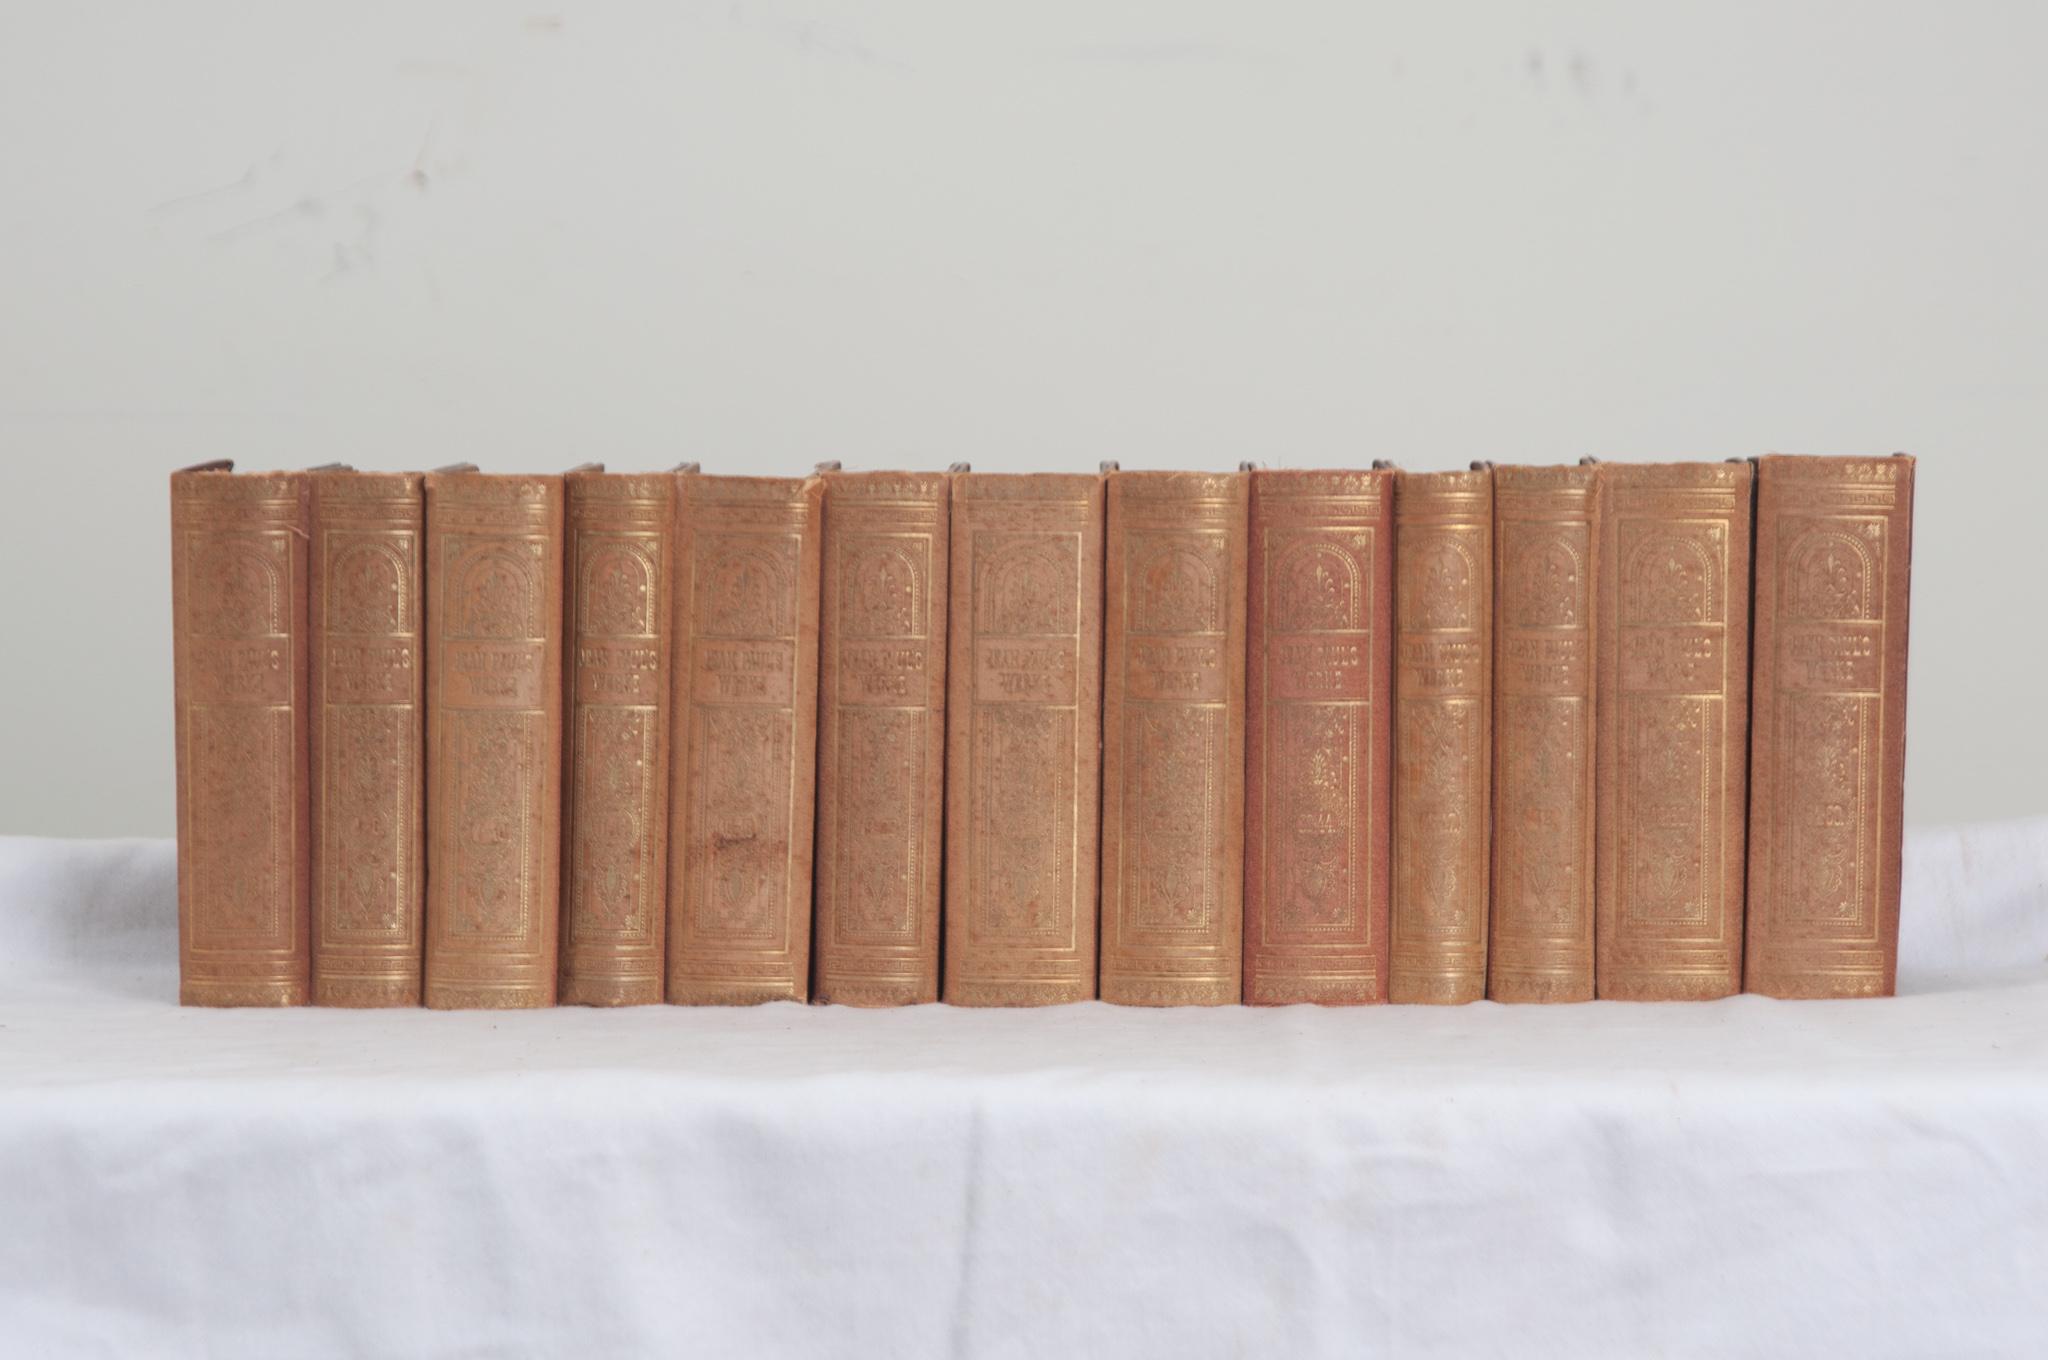 Collection de treize volumes du romancier allemand Jean Paul, intitulée Jean Paul's Werke from 1783-1822. Cet ensemble de livres est relié en tissu pressé avec des lettres dorées. L'intérieur est tapissé de papier marbré. Il y a des signes mineurs